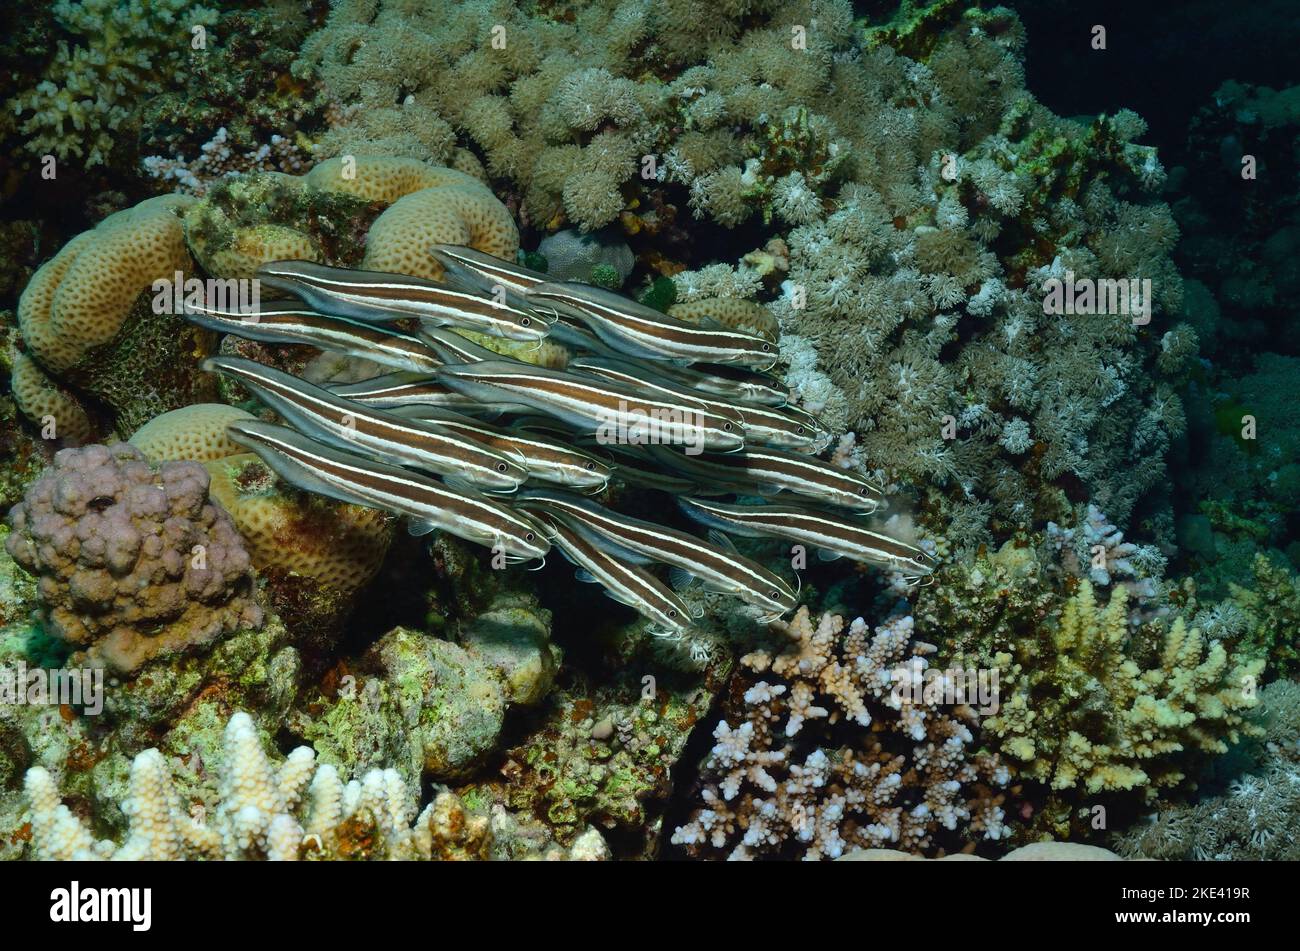 striped eel catfishes, Gestreifter Korallenwels, Plotosus lineatus, Schwarmverhalten, schooling behavior Stock Photo